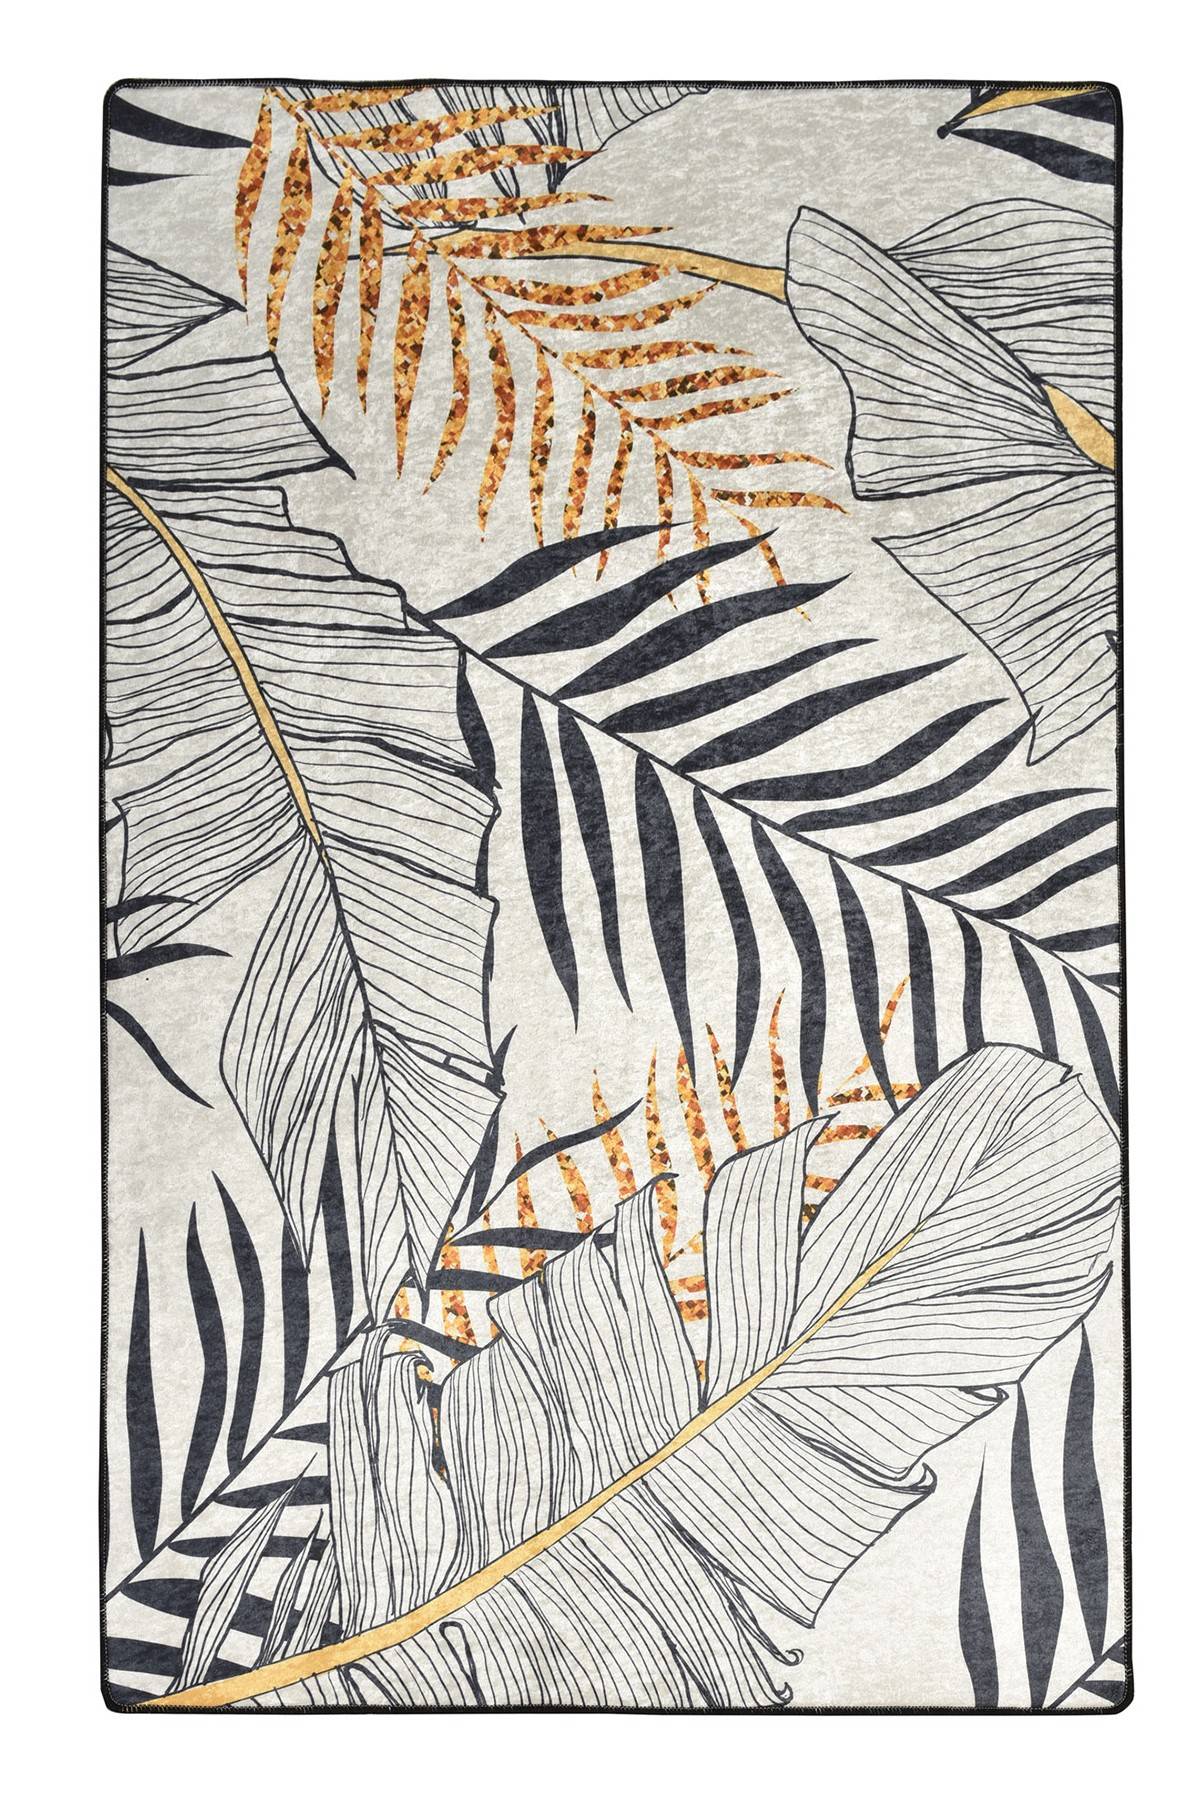 Maiko Teppich 150x300cm Blättermuster Grau, Schwarz und Gelb